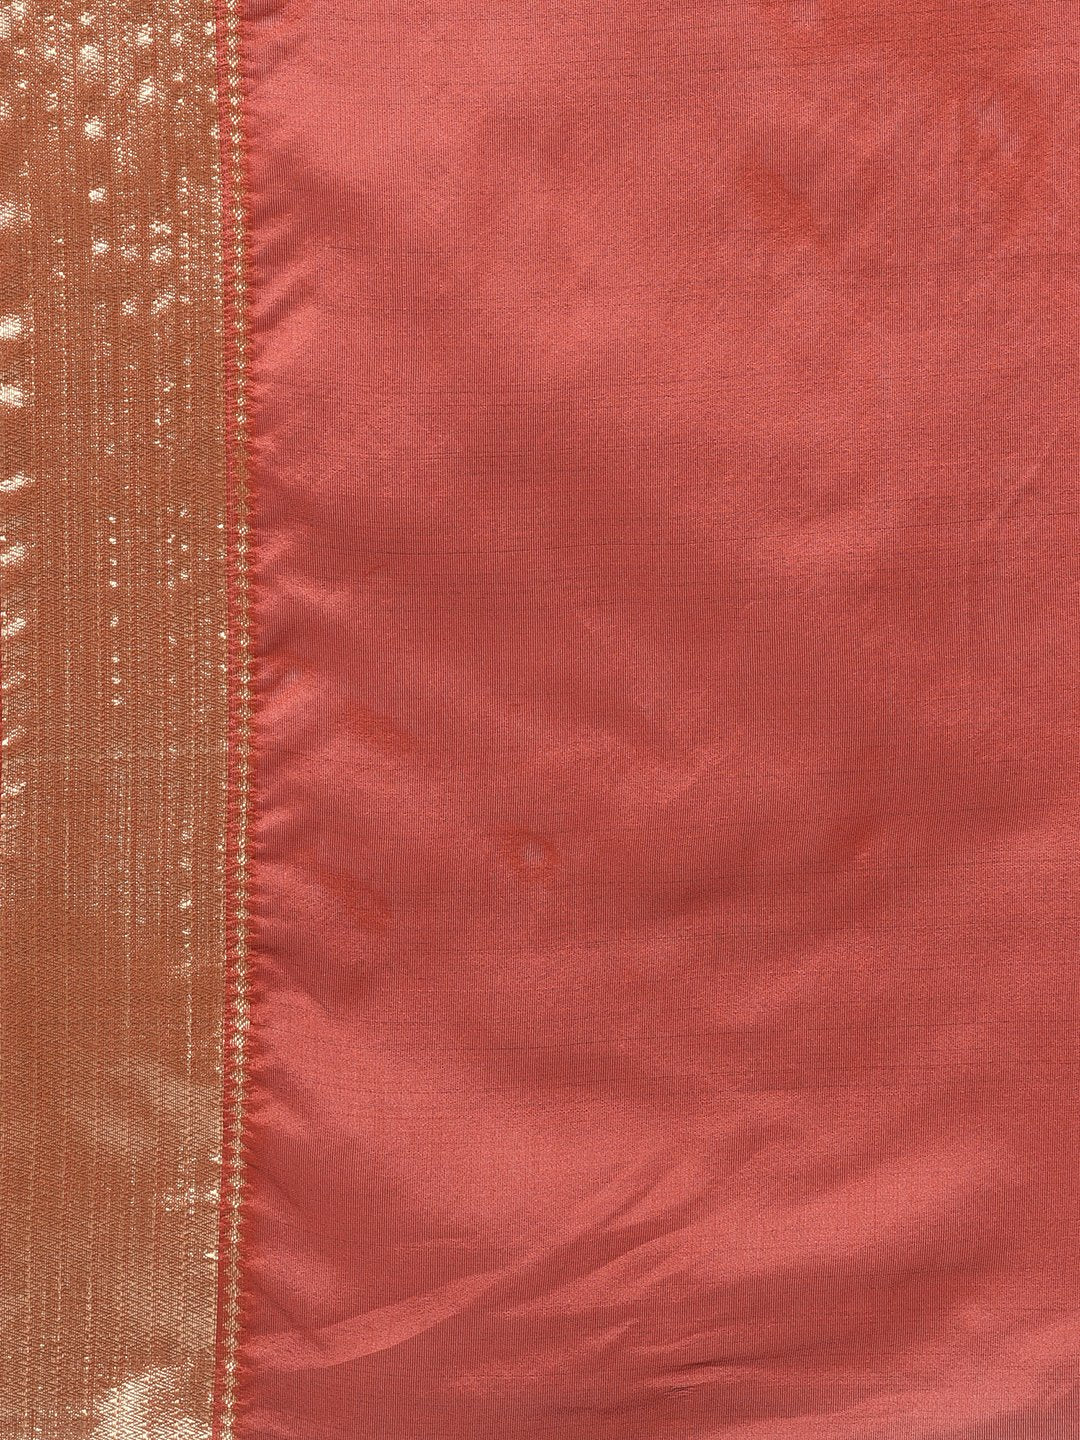 Handloom Saree In Golden & Red Color